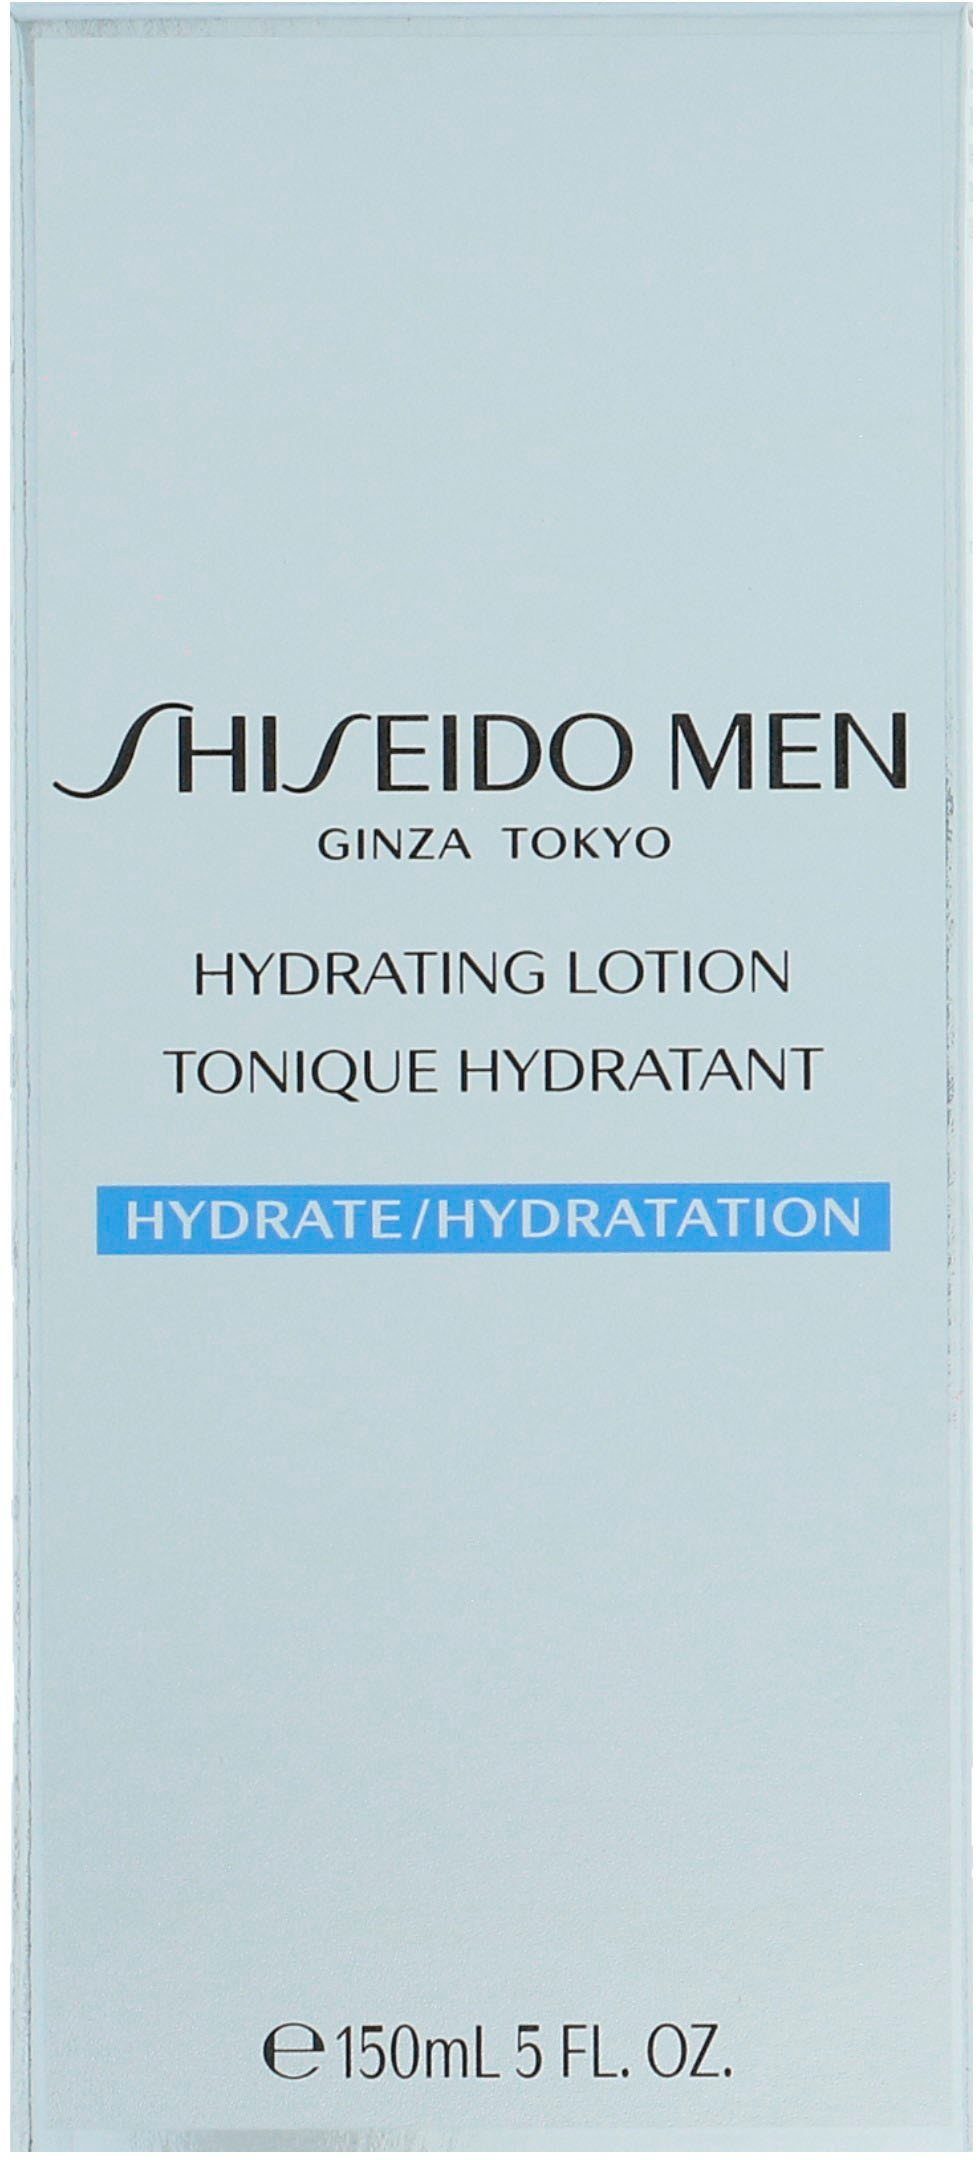 Beseitigt Unreinheiten Lotion, SHISEIDO Hydrating Gesichtslotion